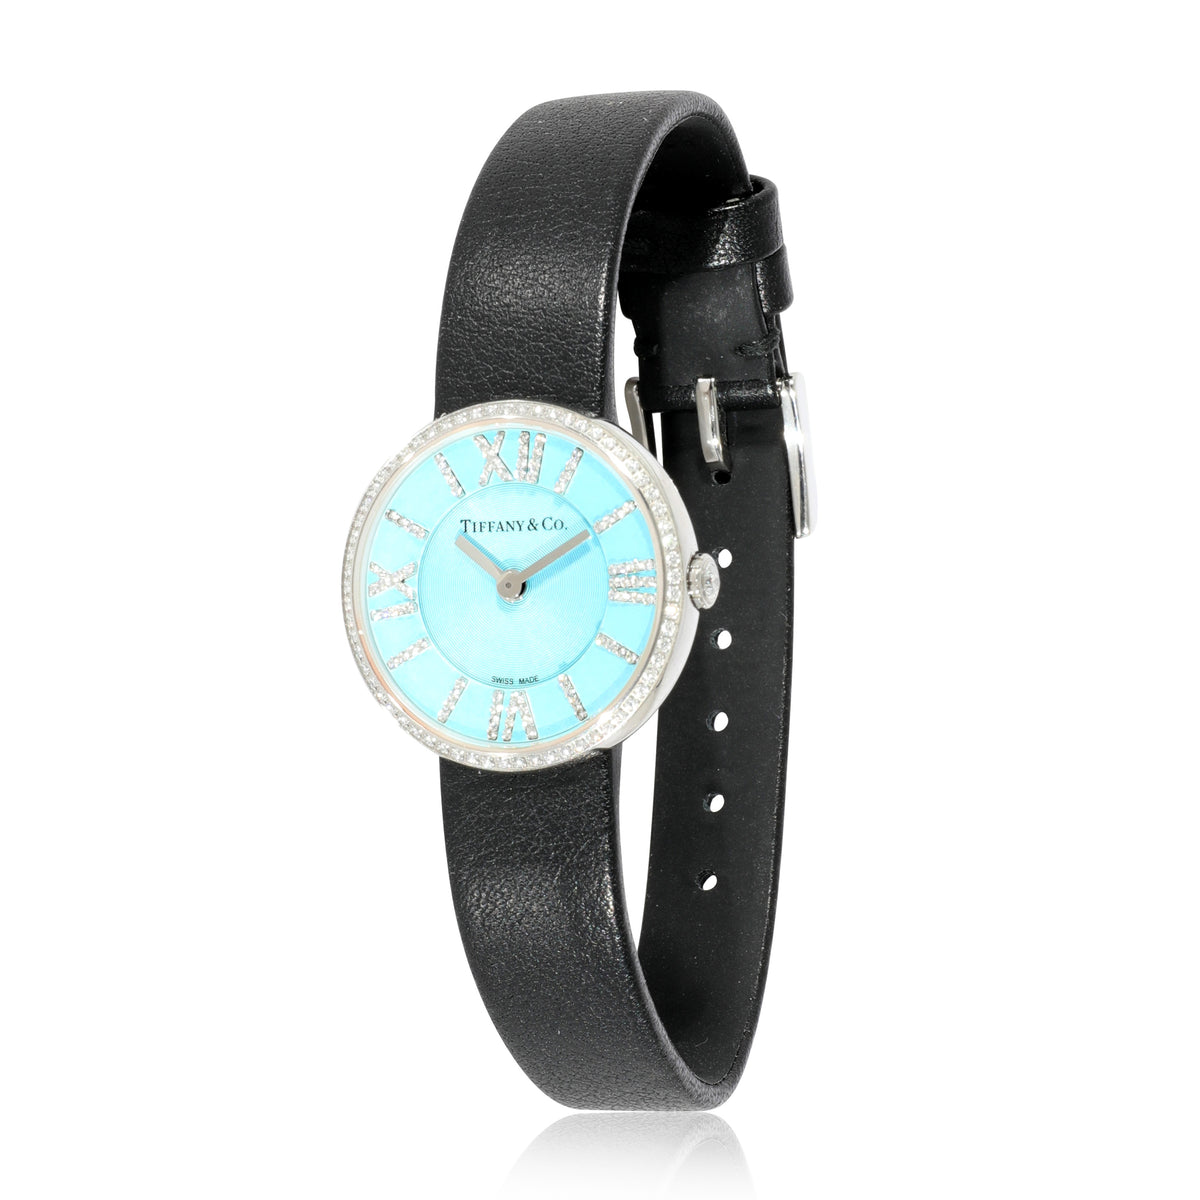 Tiffany & Co. Atlas 2-Hand 63320781 Women's Watch in  Stainless Steel